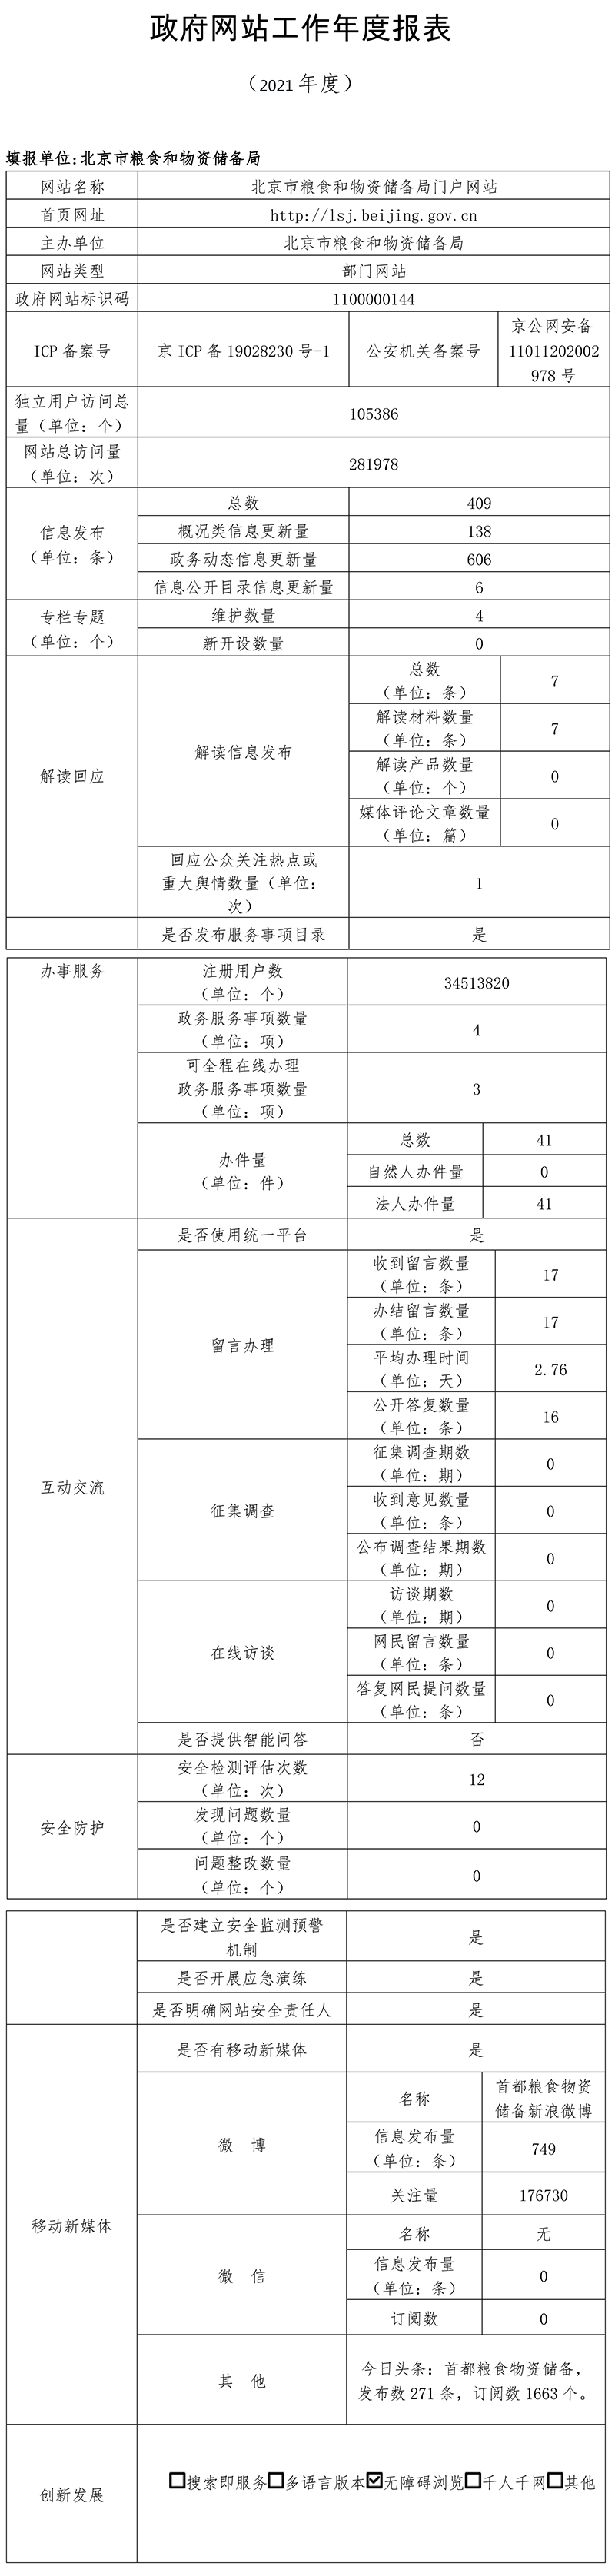 北京市糧食和物資儲備局2021年政府網站年度工作報表